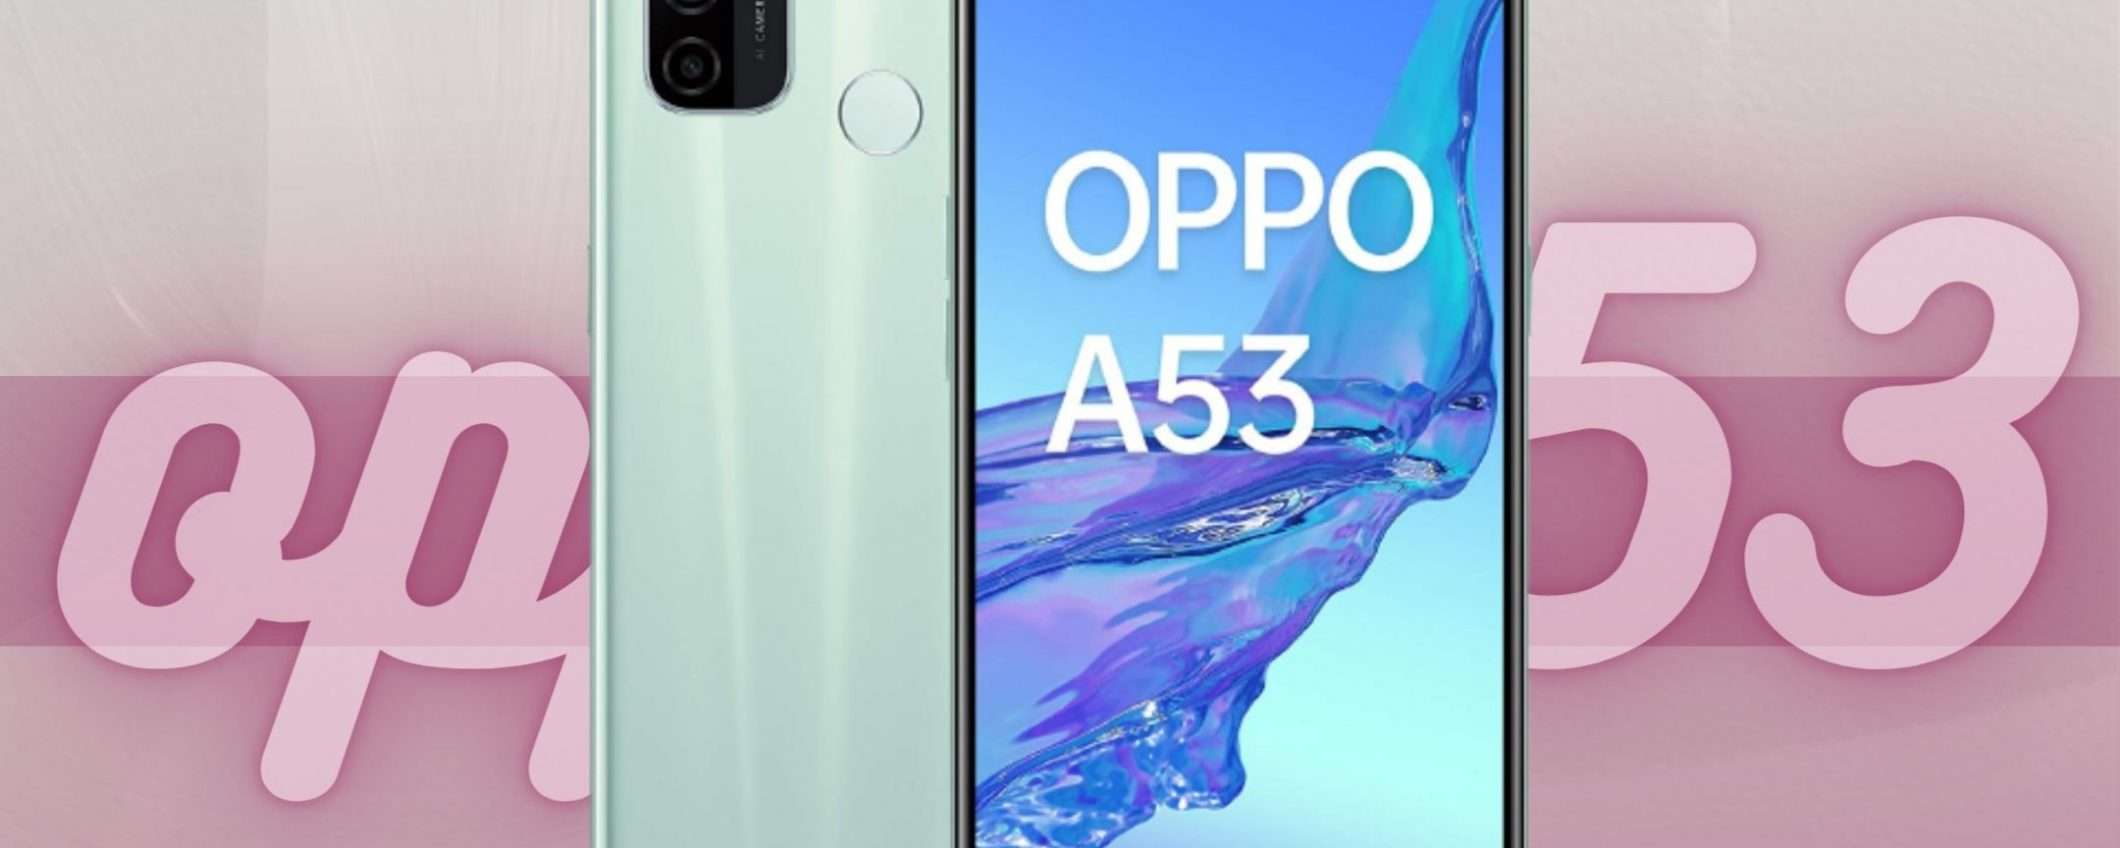 Oppo A53 è il tuo nuovo smartphone a PREZZO REGALO